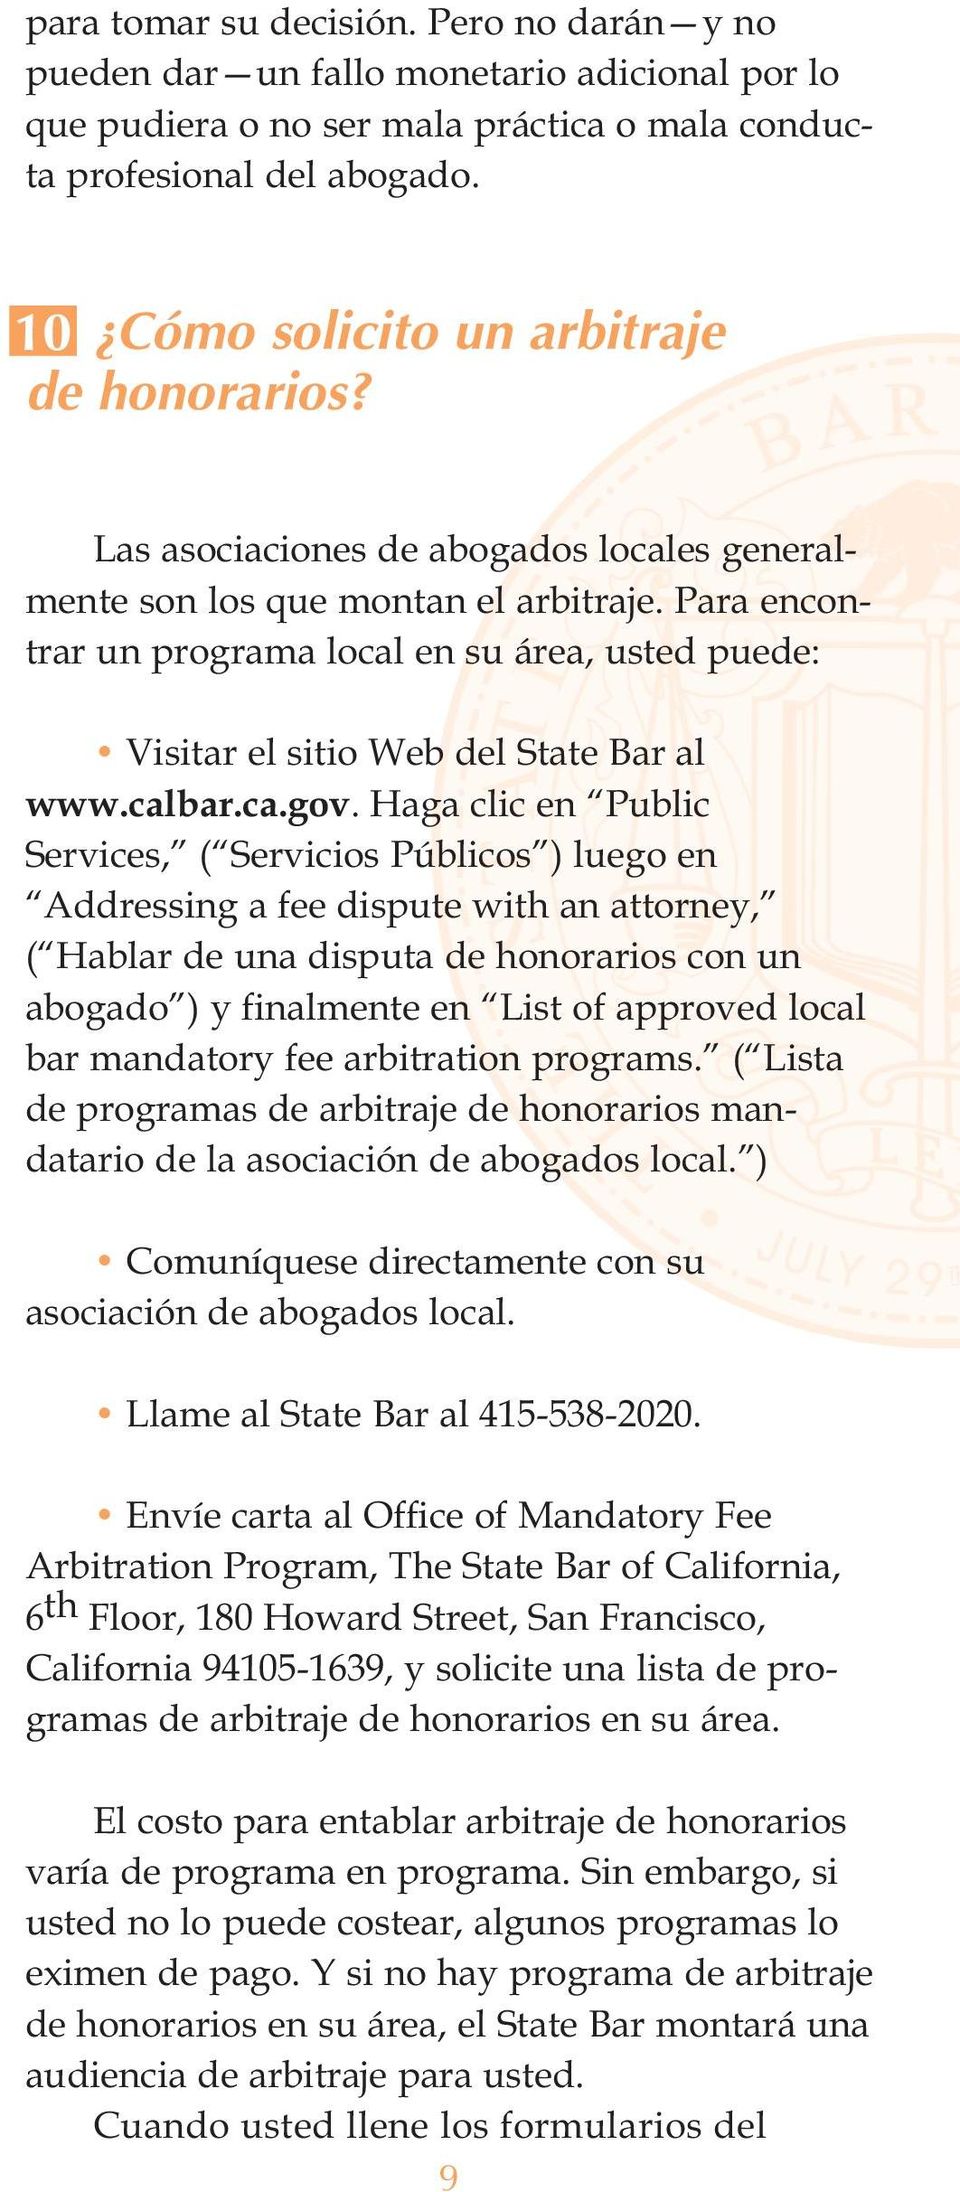 Para encontrar un programa local en su área, usted puede: Visitar el sitio Web del State Bar al www.calbar.ca.gov.